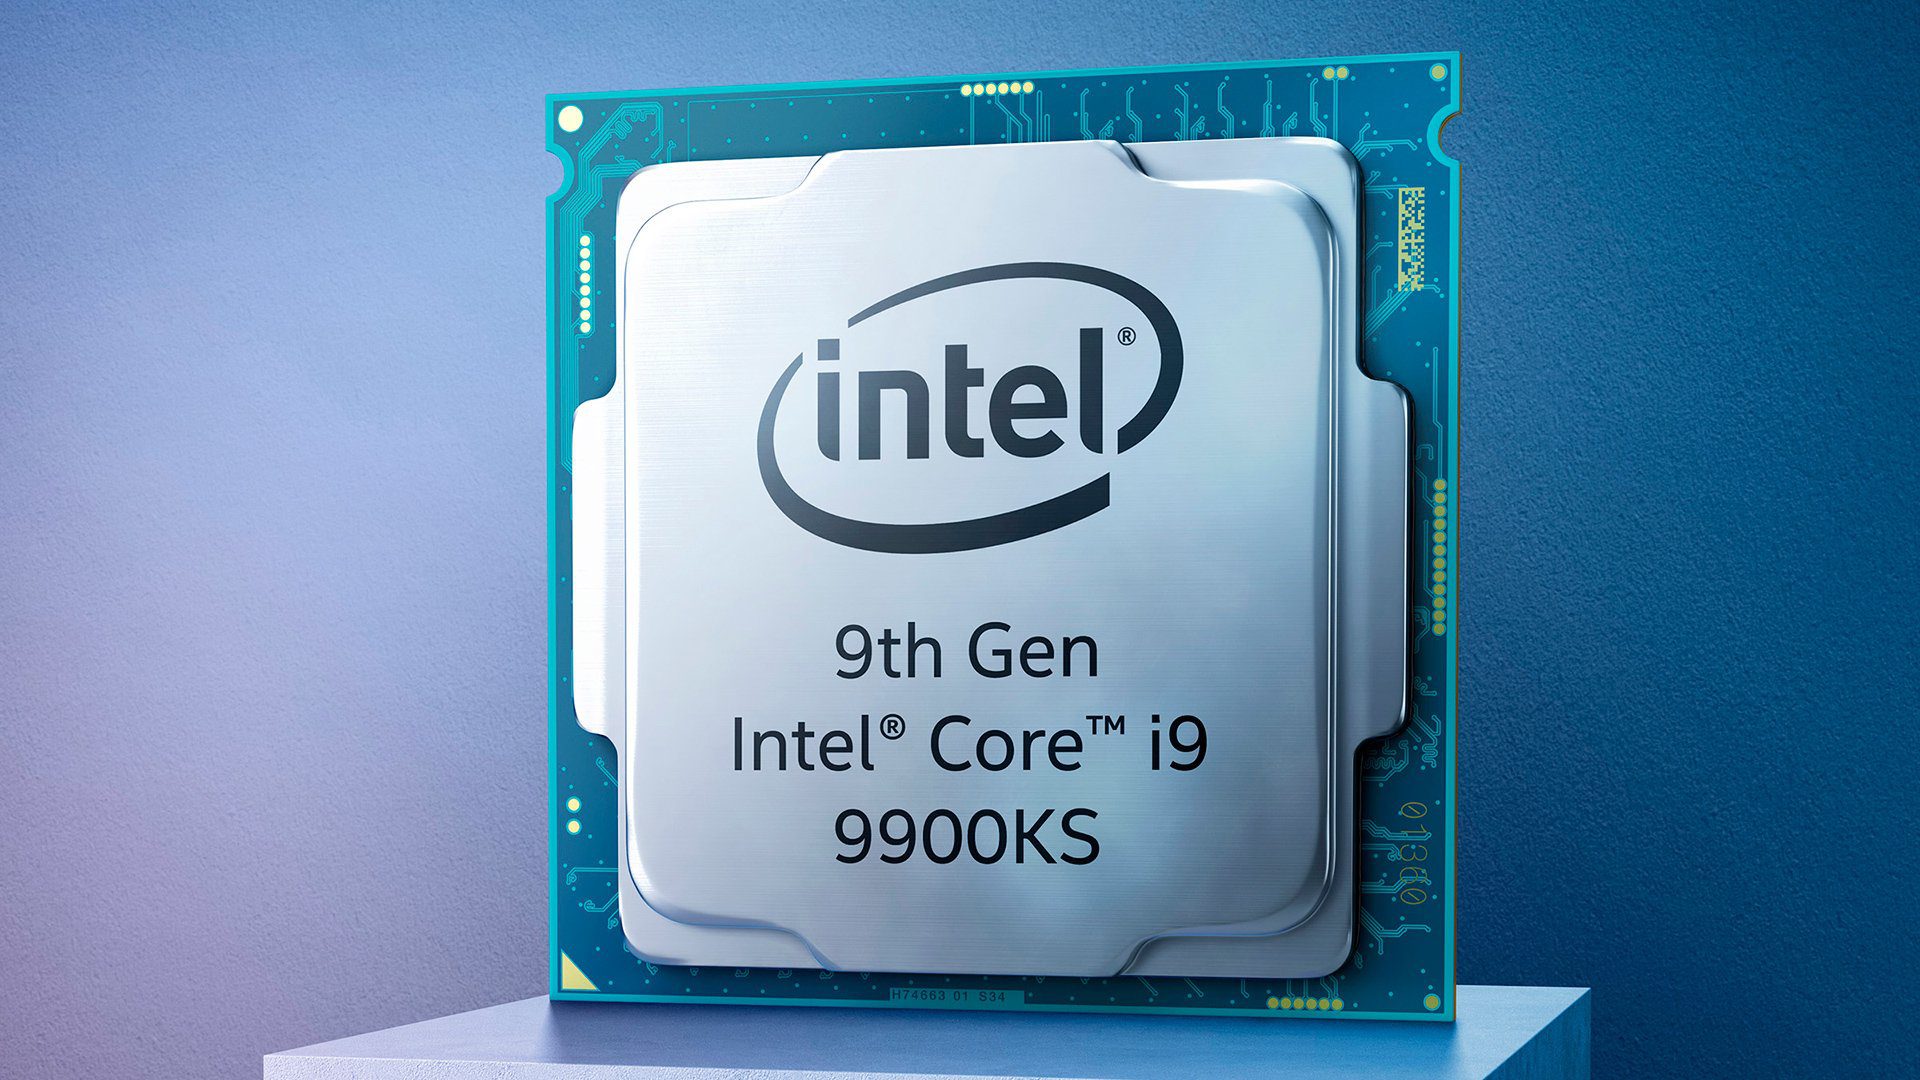 Какой интел коре лучше. I9 9900ks. Core i9 9900. Intel Core i9-9900k. Процессор Интел 9.